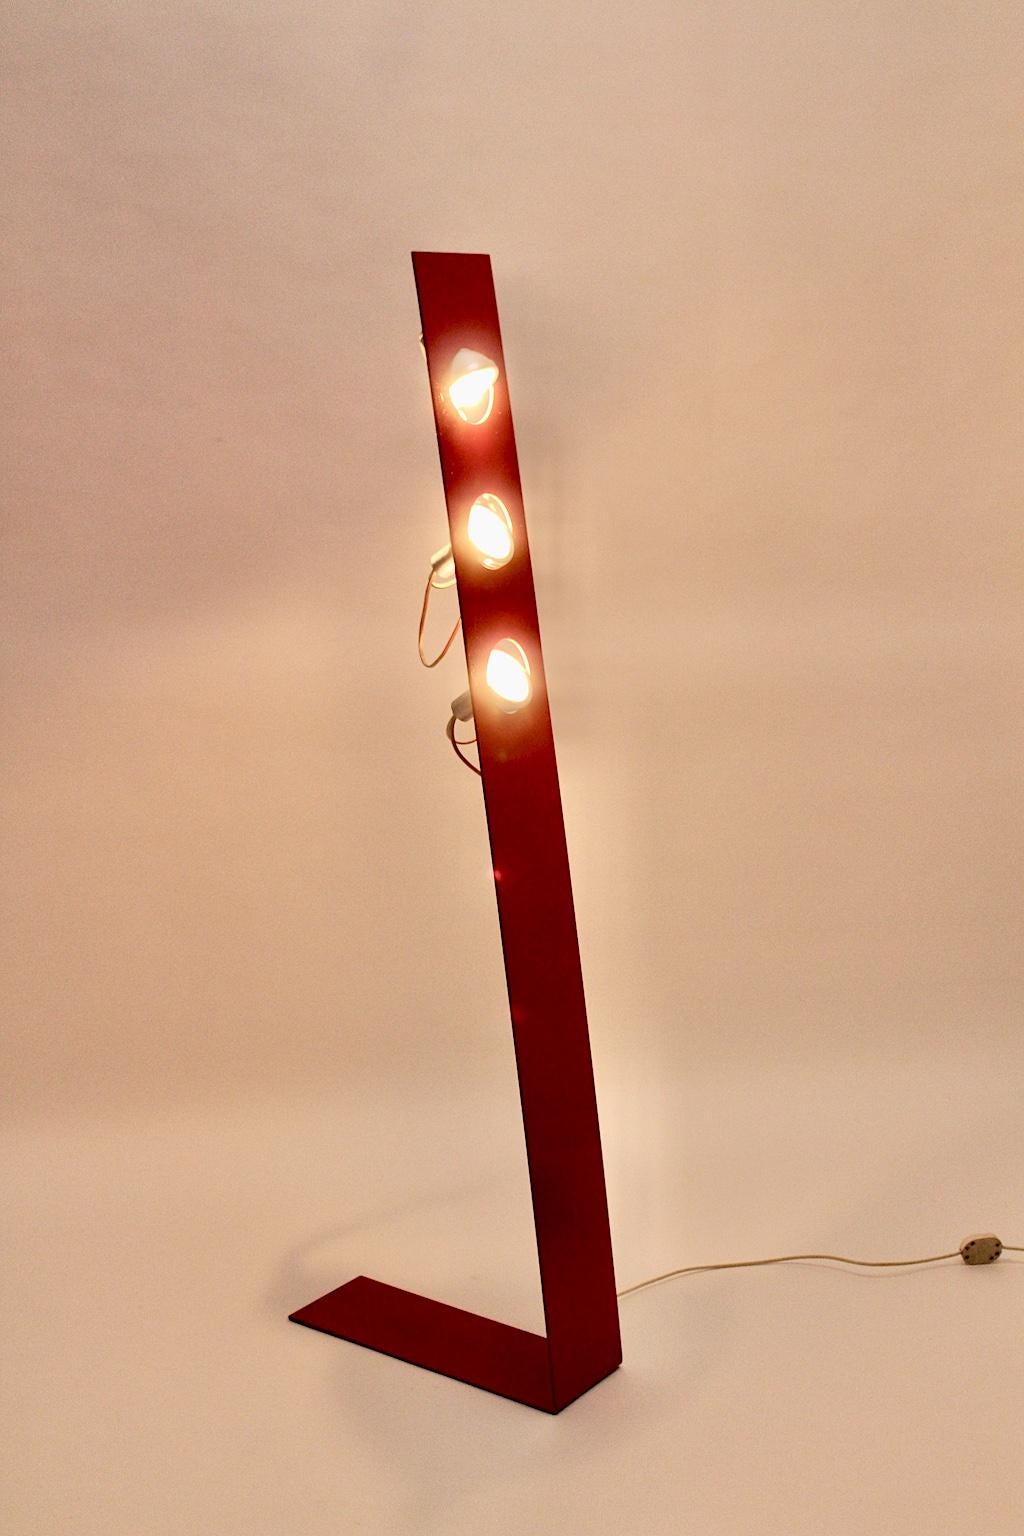 Space Age Vintage Stehleuchte aus rotem Metall, entworfen und hergestellt in den 1960er Jahren, Italien.
Die erstaunliche Stehleuchte hat einen roten, geknickten Metallsockel mit drei E 14-Fassungen.
Die Lichter sind einstellbar.
Auch die Stehlampe